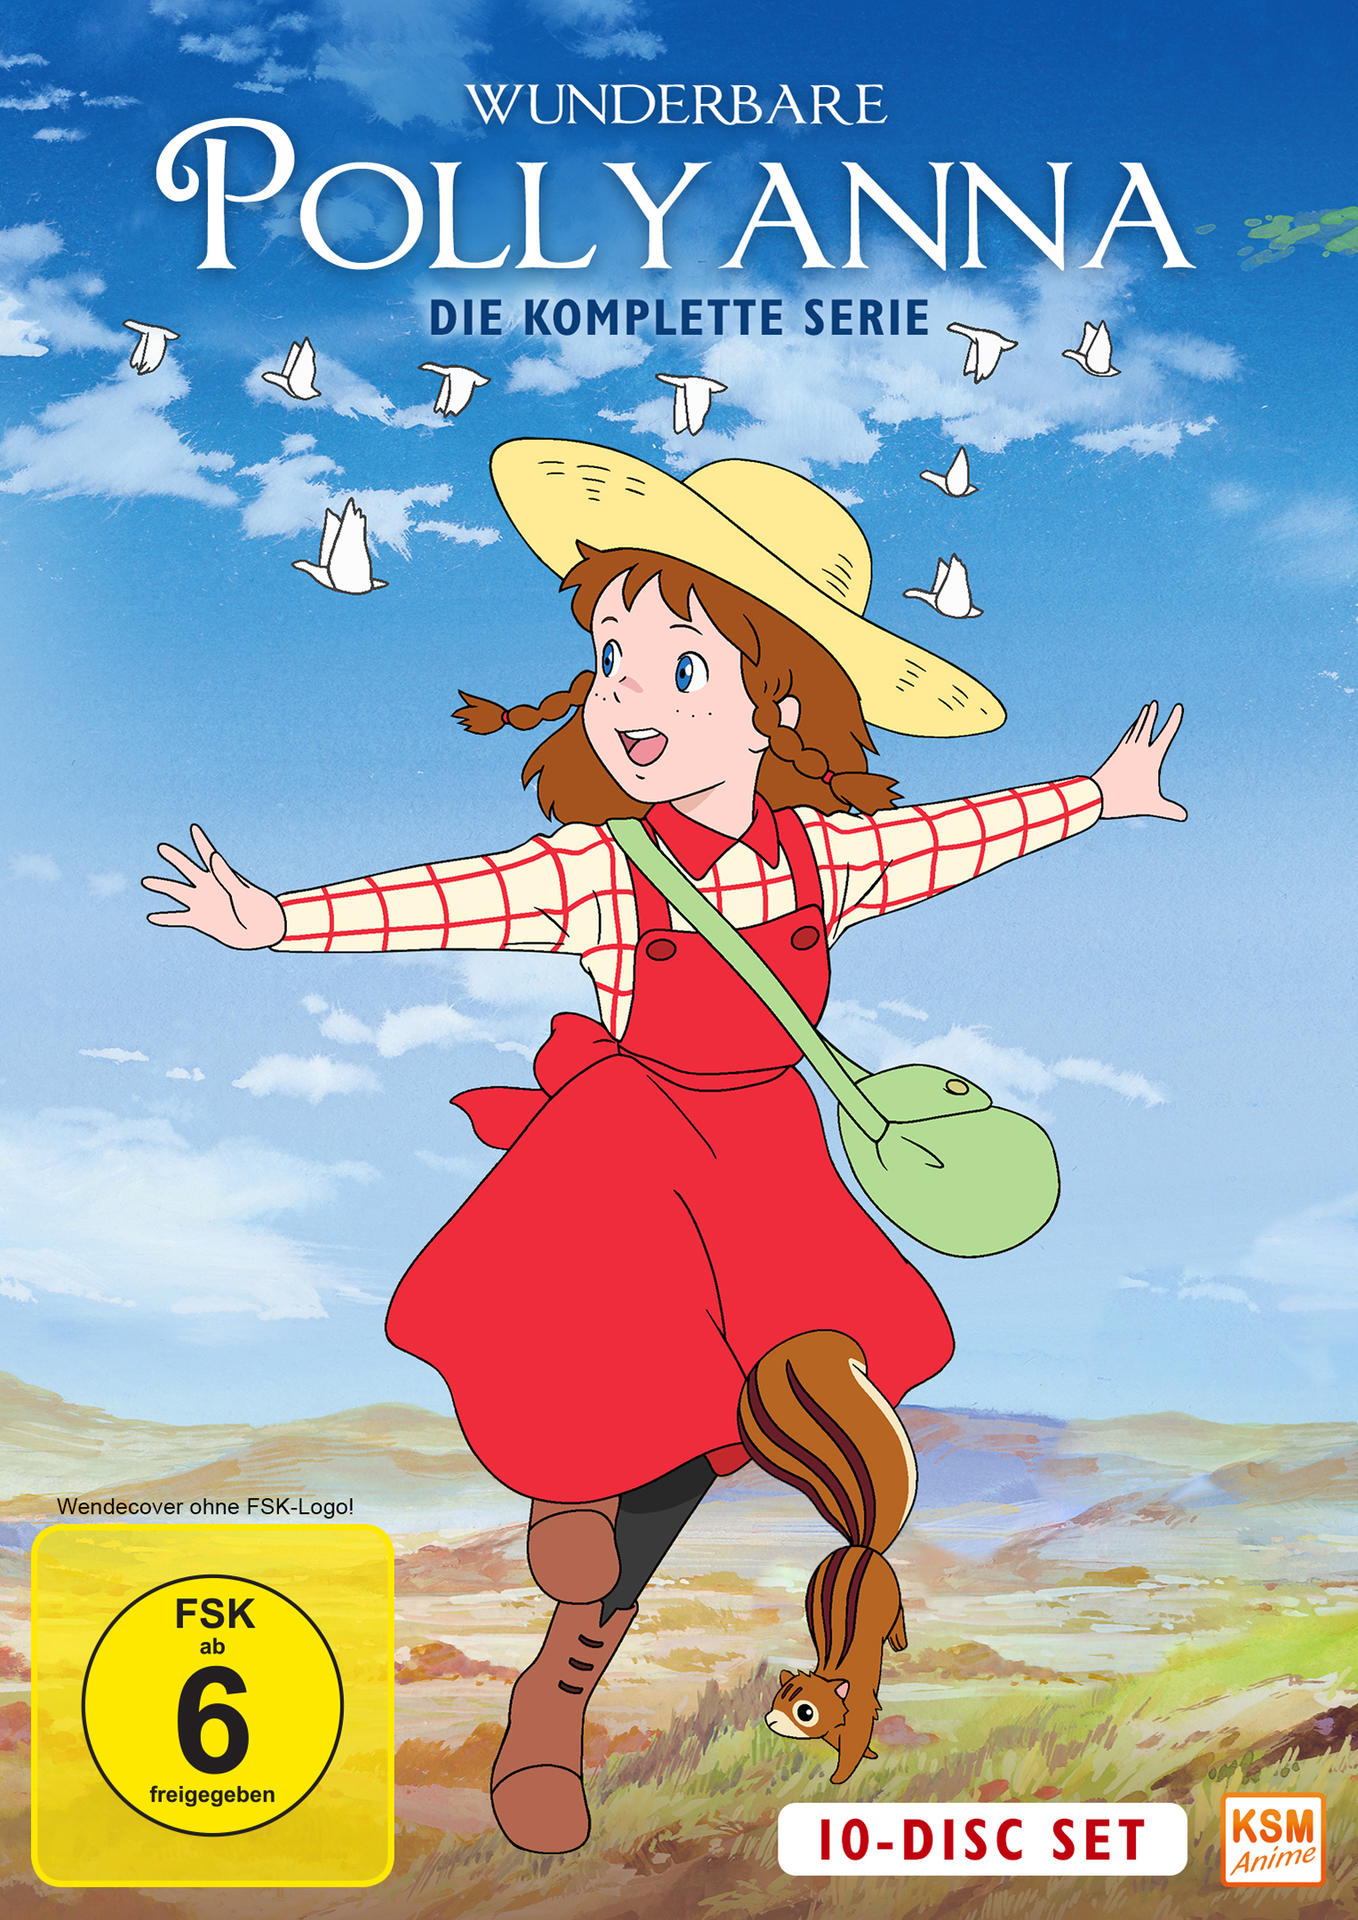 Wunderbare Pollyanna DVD komplette Serie - Die